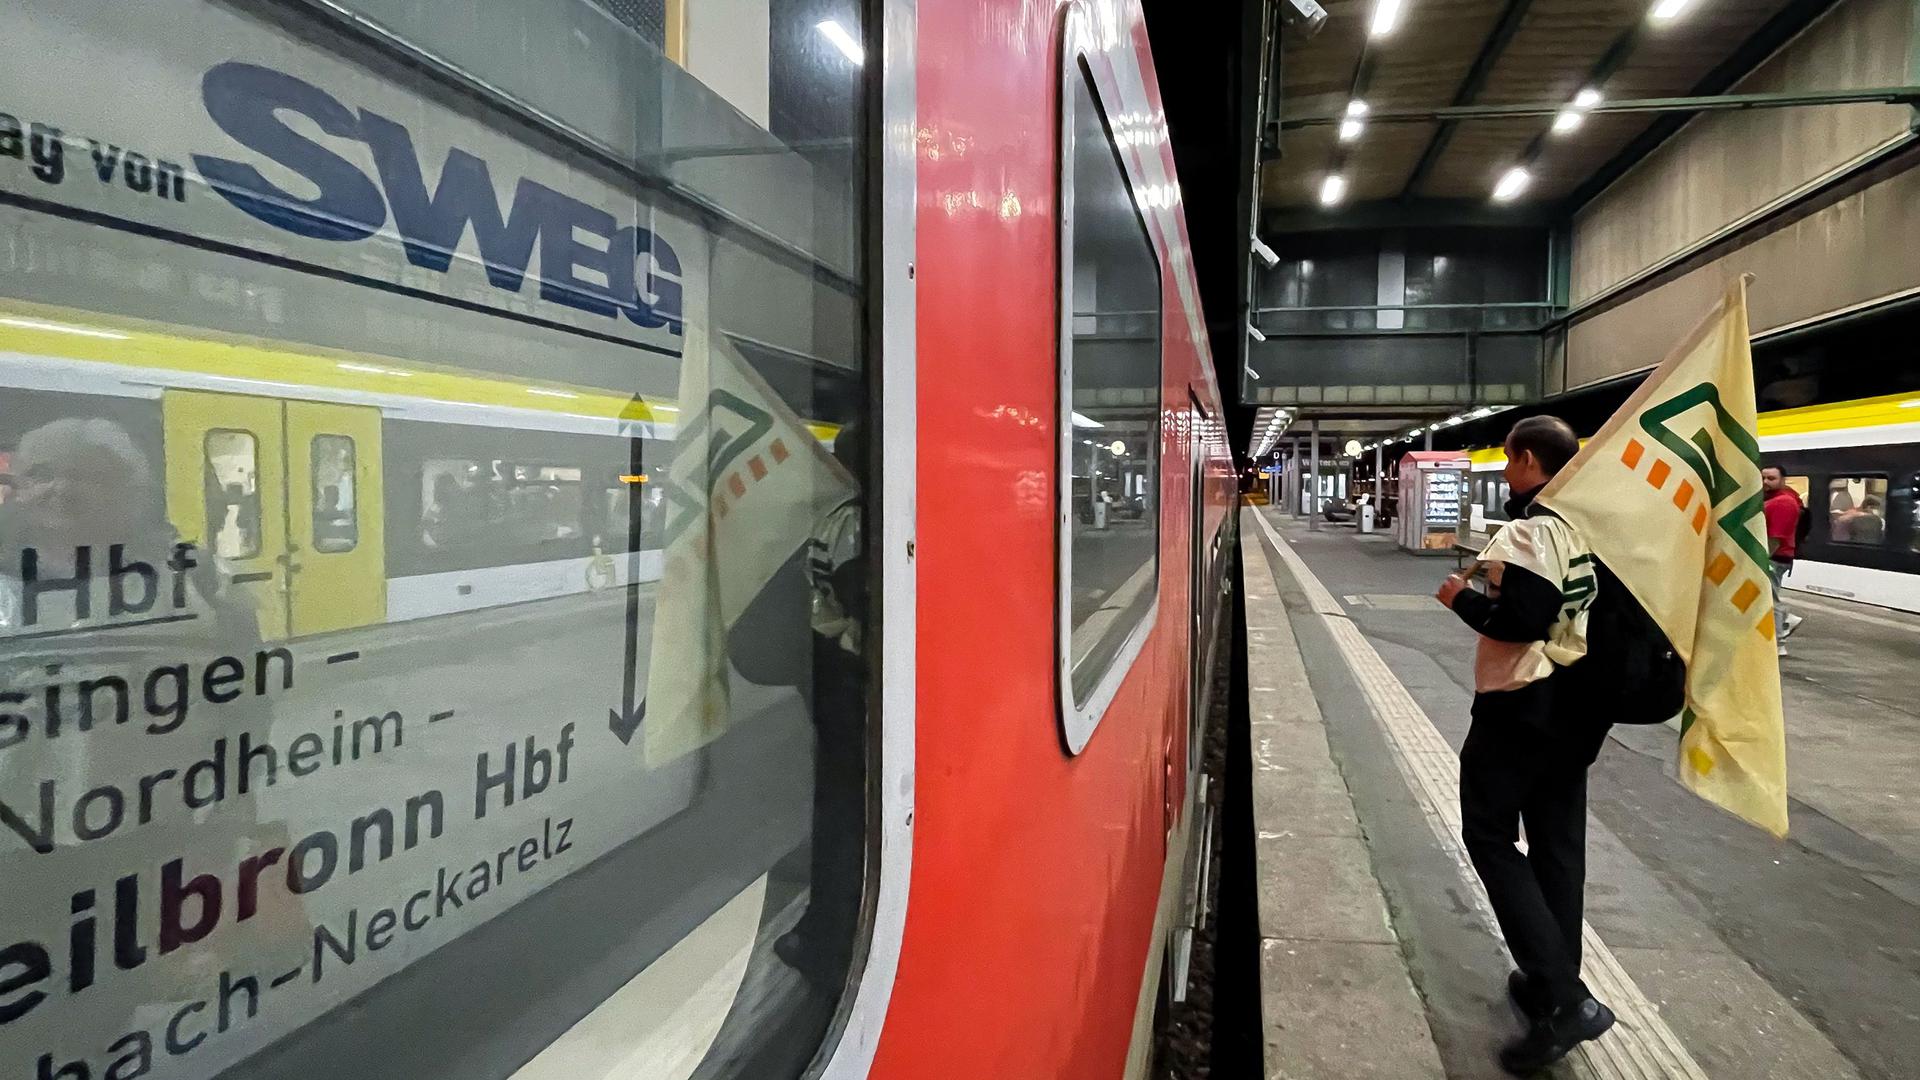 Hoffnung auf Vermittlung: Seit September führt die Lokführergewerkschaft GDL einen Arbeitskampf gegen die landeseigene SWEG. Immer wieder fallen deshalb Zugverbindungen aus. Nun hat sich die SWEG  zum Einsatz eines Vermittlers bekannt. 